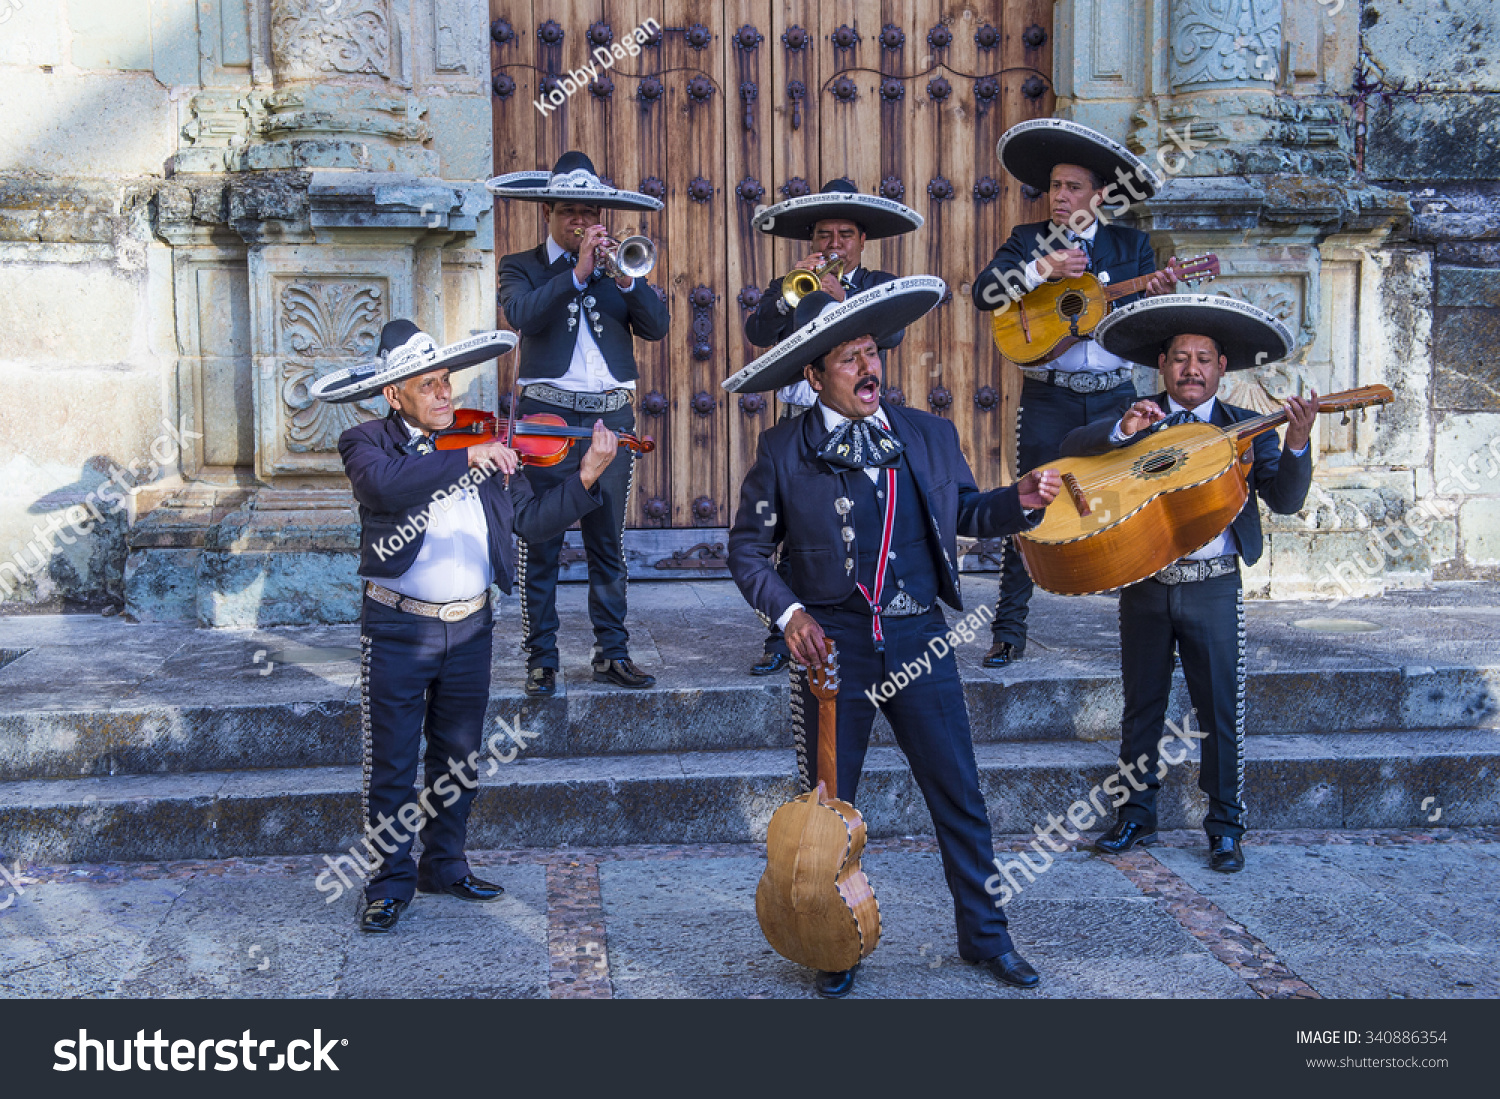 瓦哈卡,墨西哥:11月02 mariachis完成在瓦哈卡,墨西哥